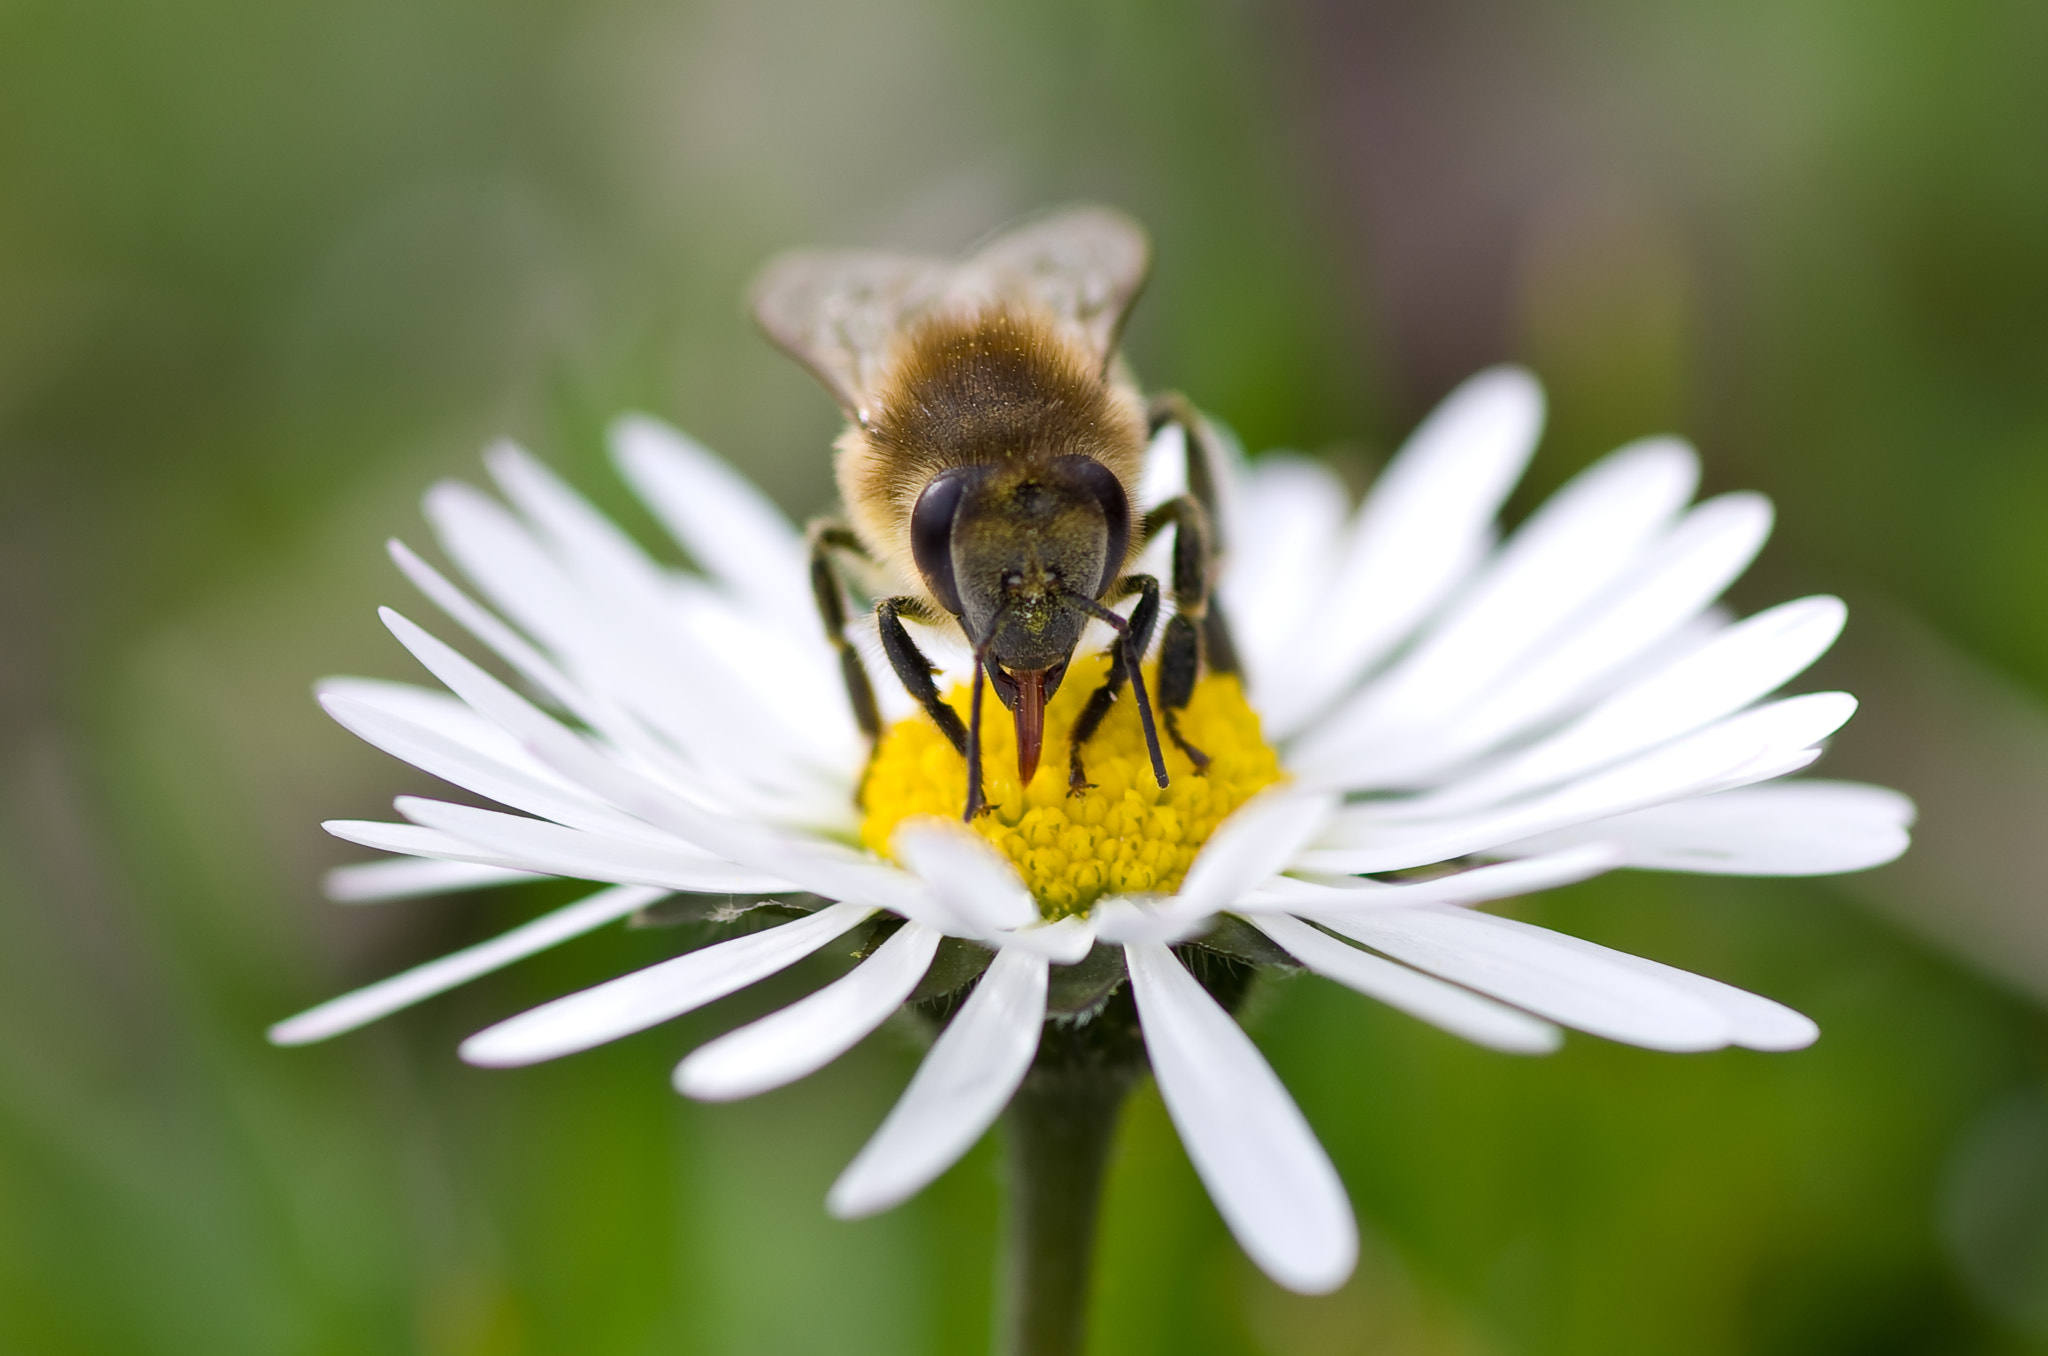 Pentax K-5 sample photo. Une abeille qui tire la langue à son paparazzi photography